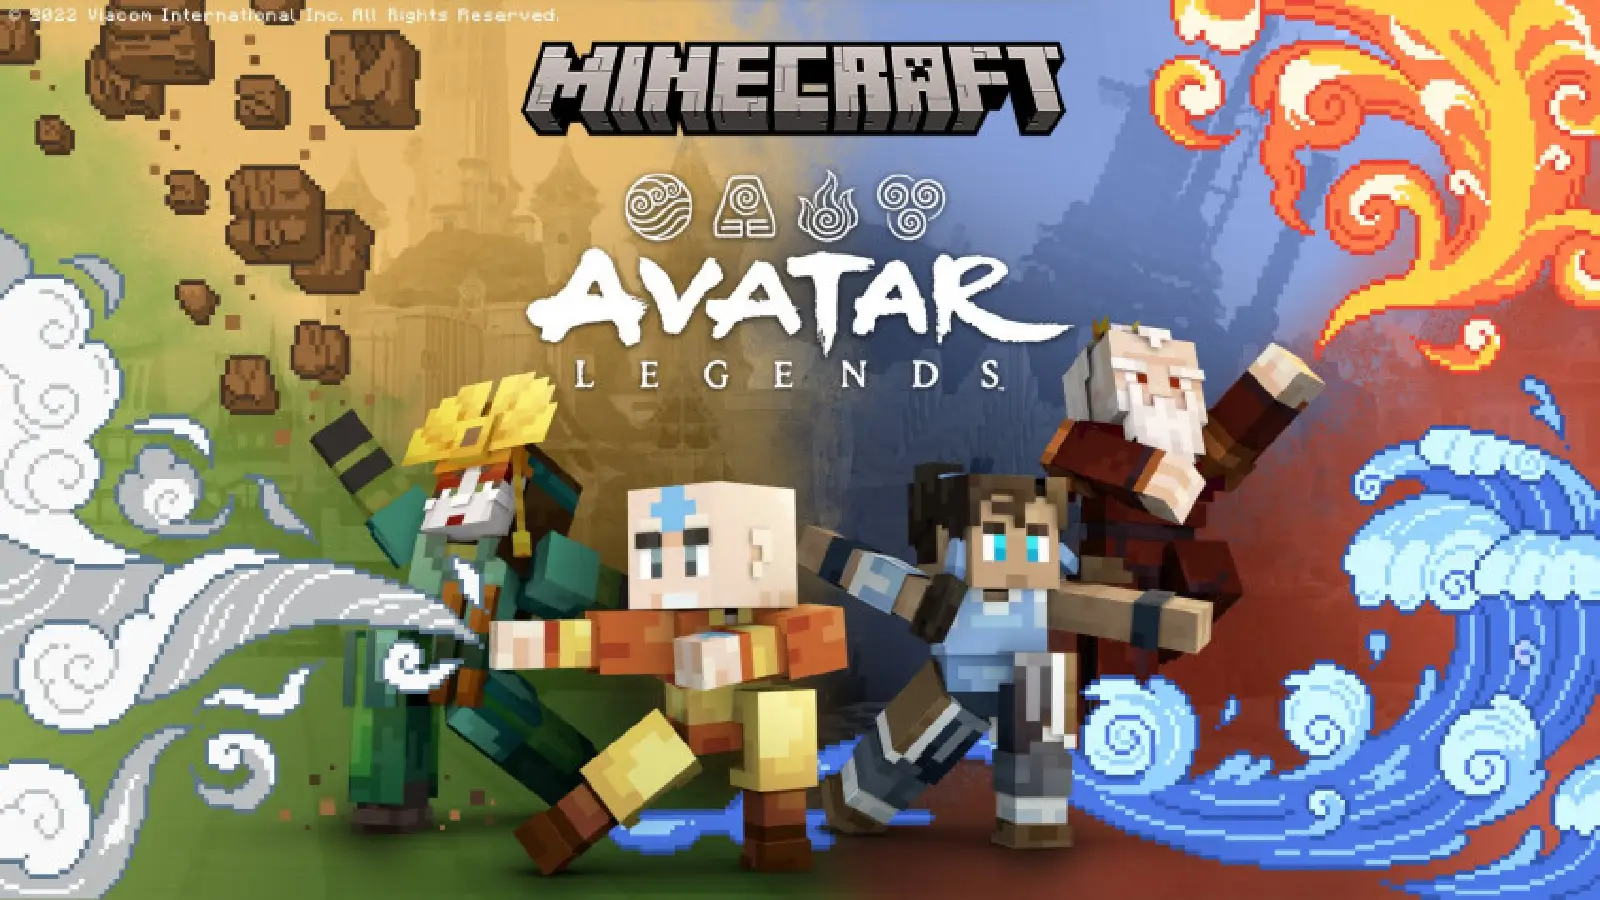 Minecraft получит DLC кроссовер с «Аватаром» 6 декабря